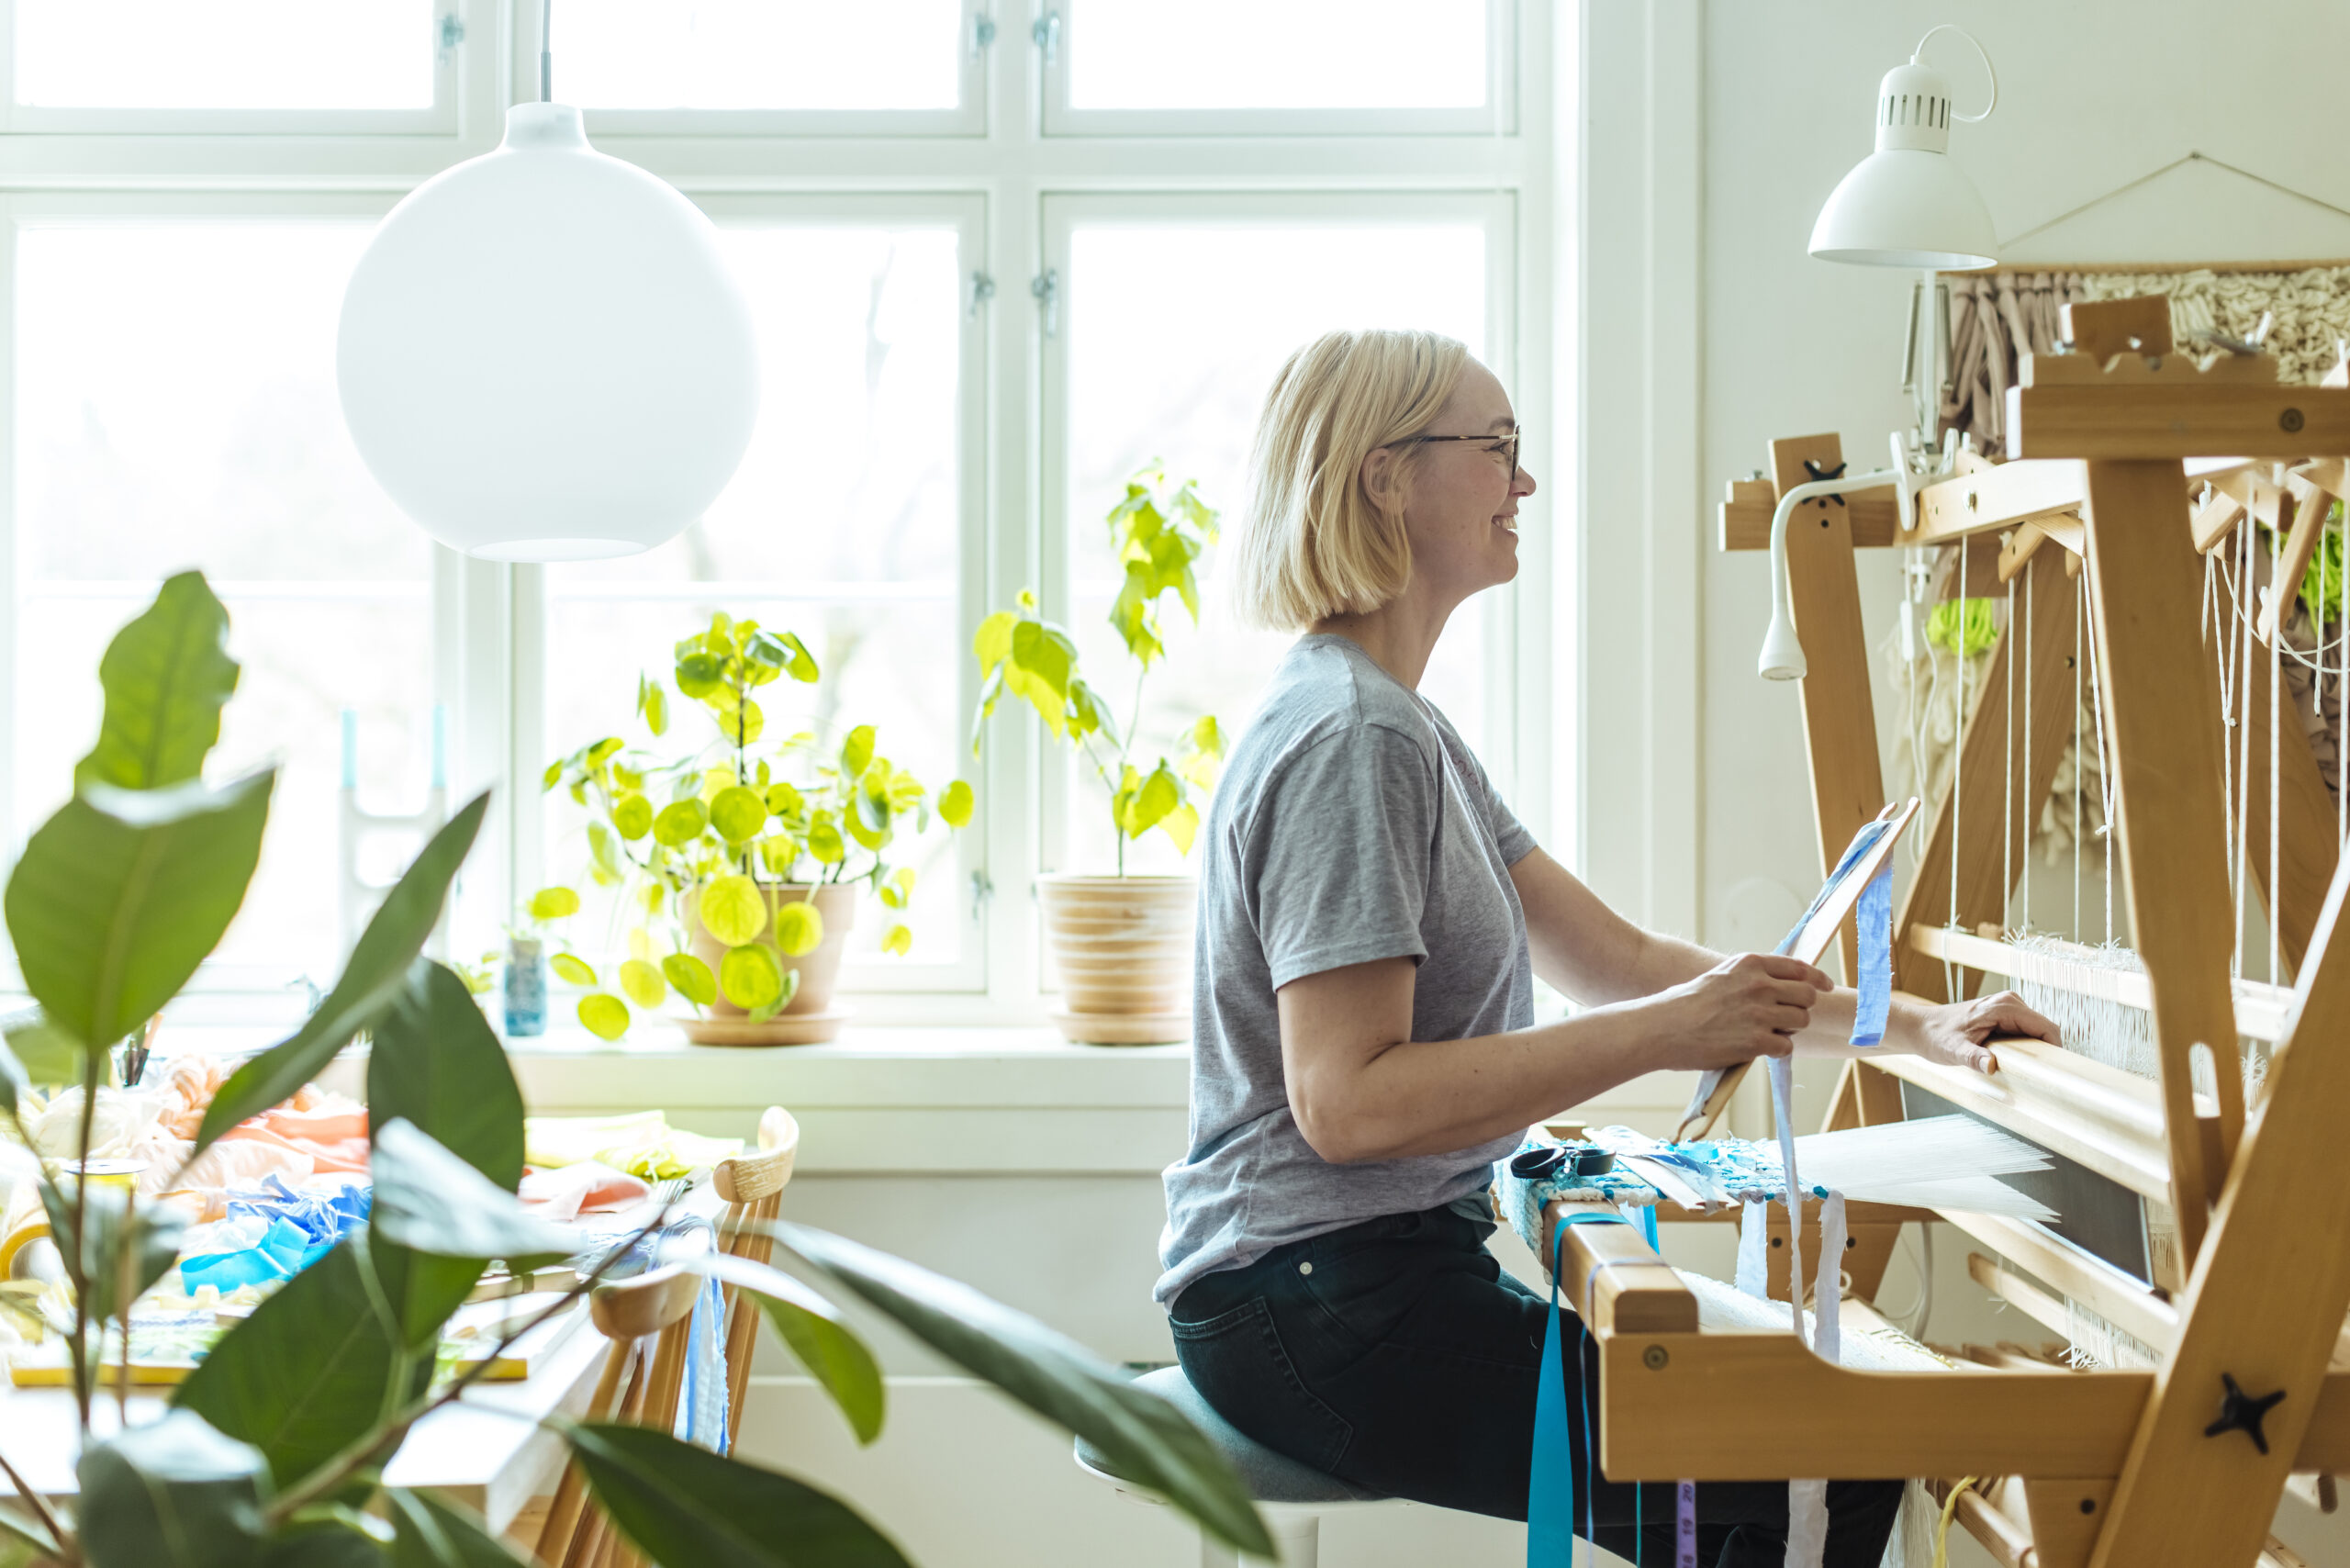 Ida Hagens hjem er fylt med lyse farger, grønne planter og en vevstol i hjørnet. Her utforsker hun nye teknikker, materialer og fargekombinasjoner. Foto: Astrid Waller